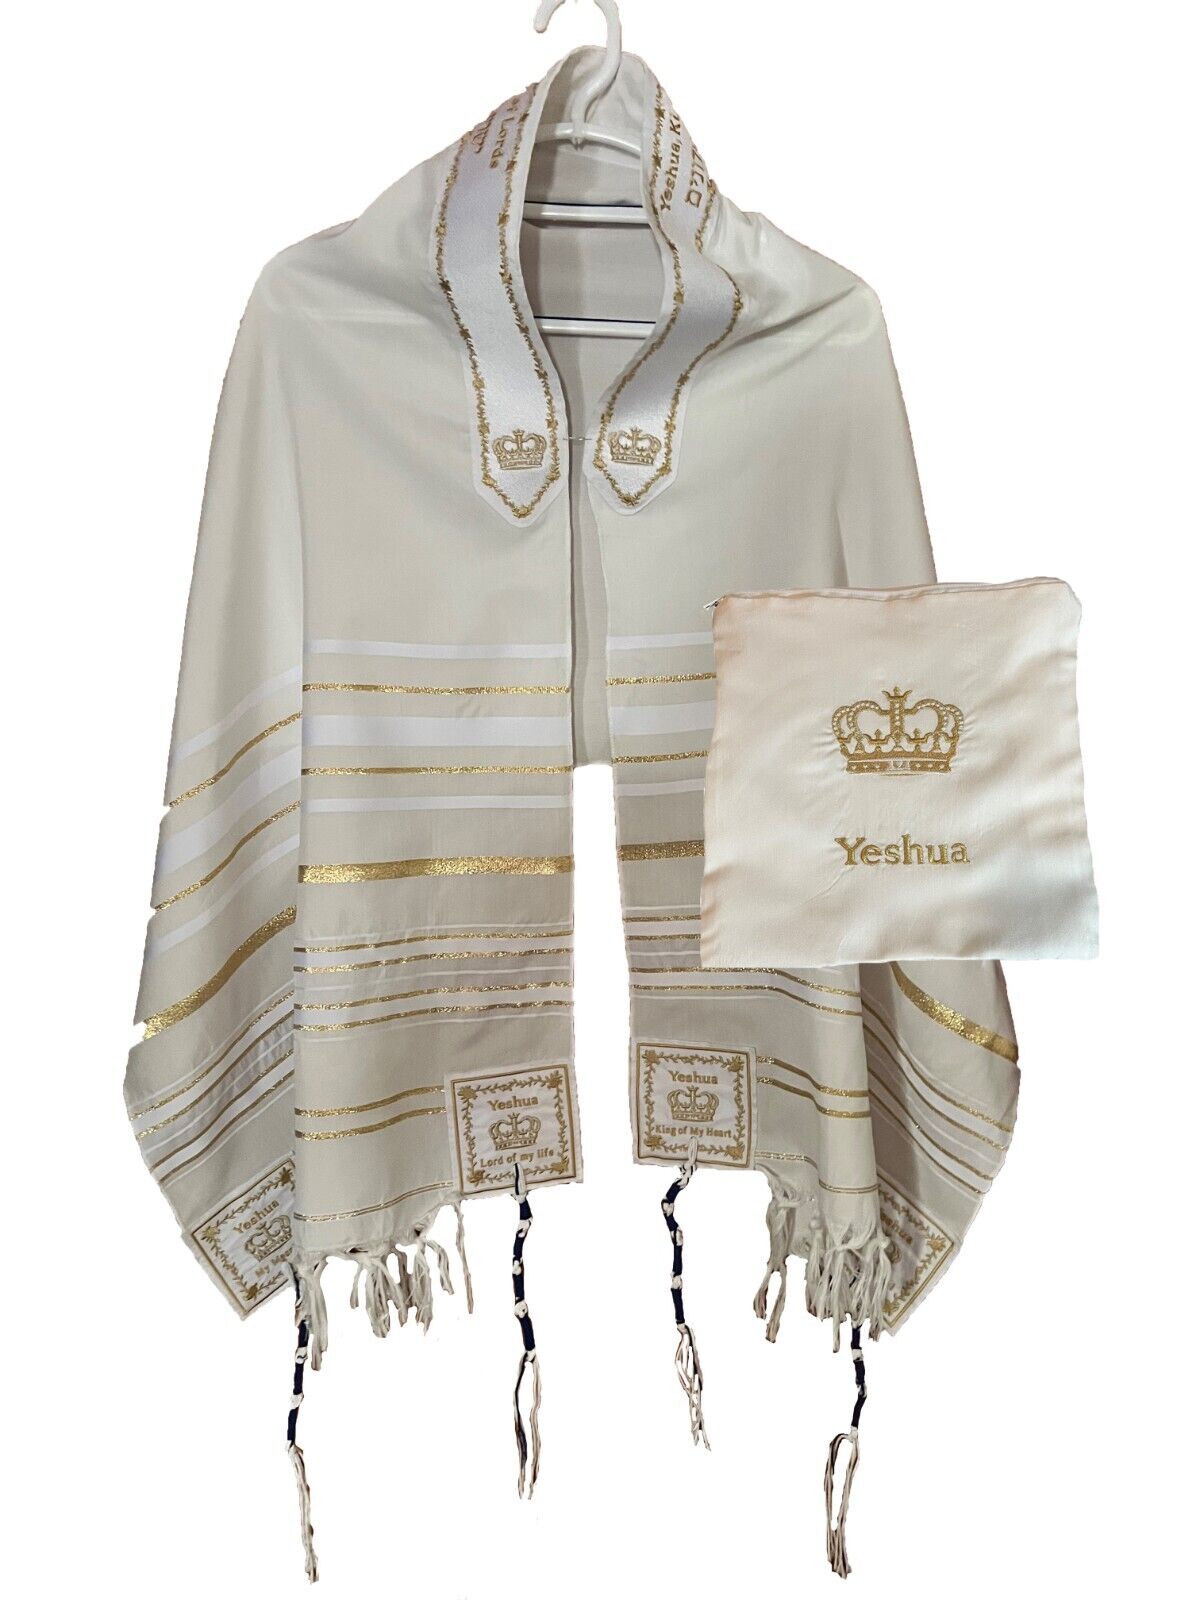 XTRA Large WHITE & GOLD Yeshua Messianic Tallit Prayer Shawl & Talit Zipper Bag